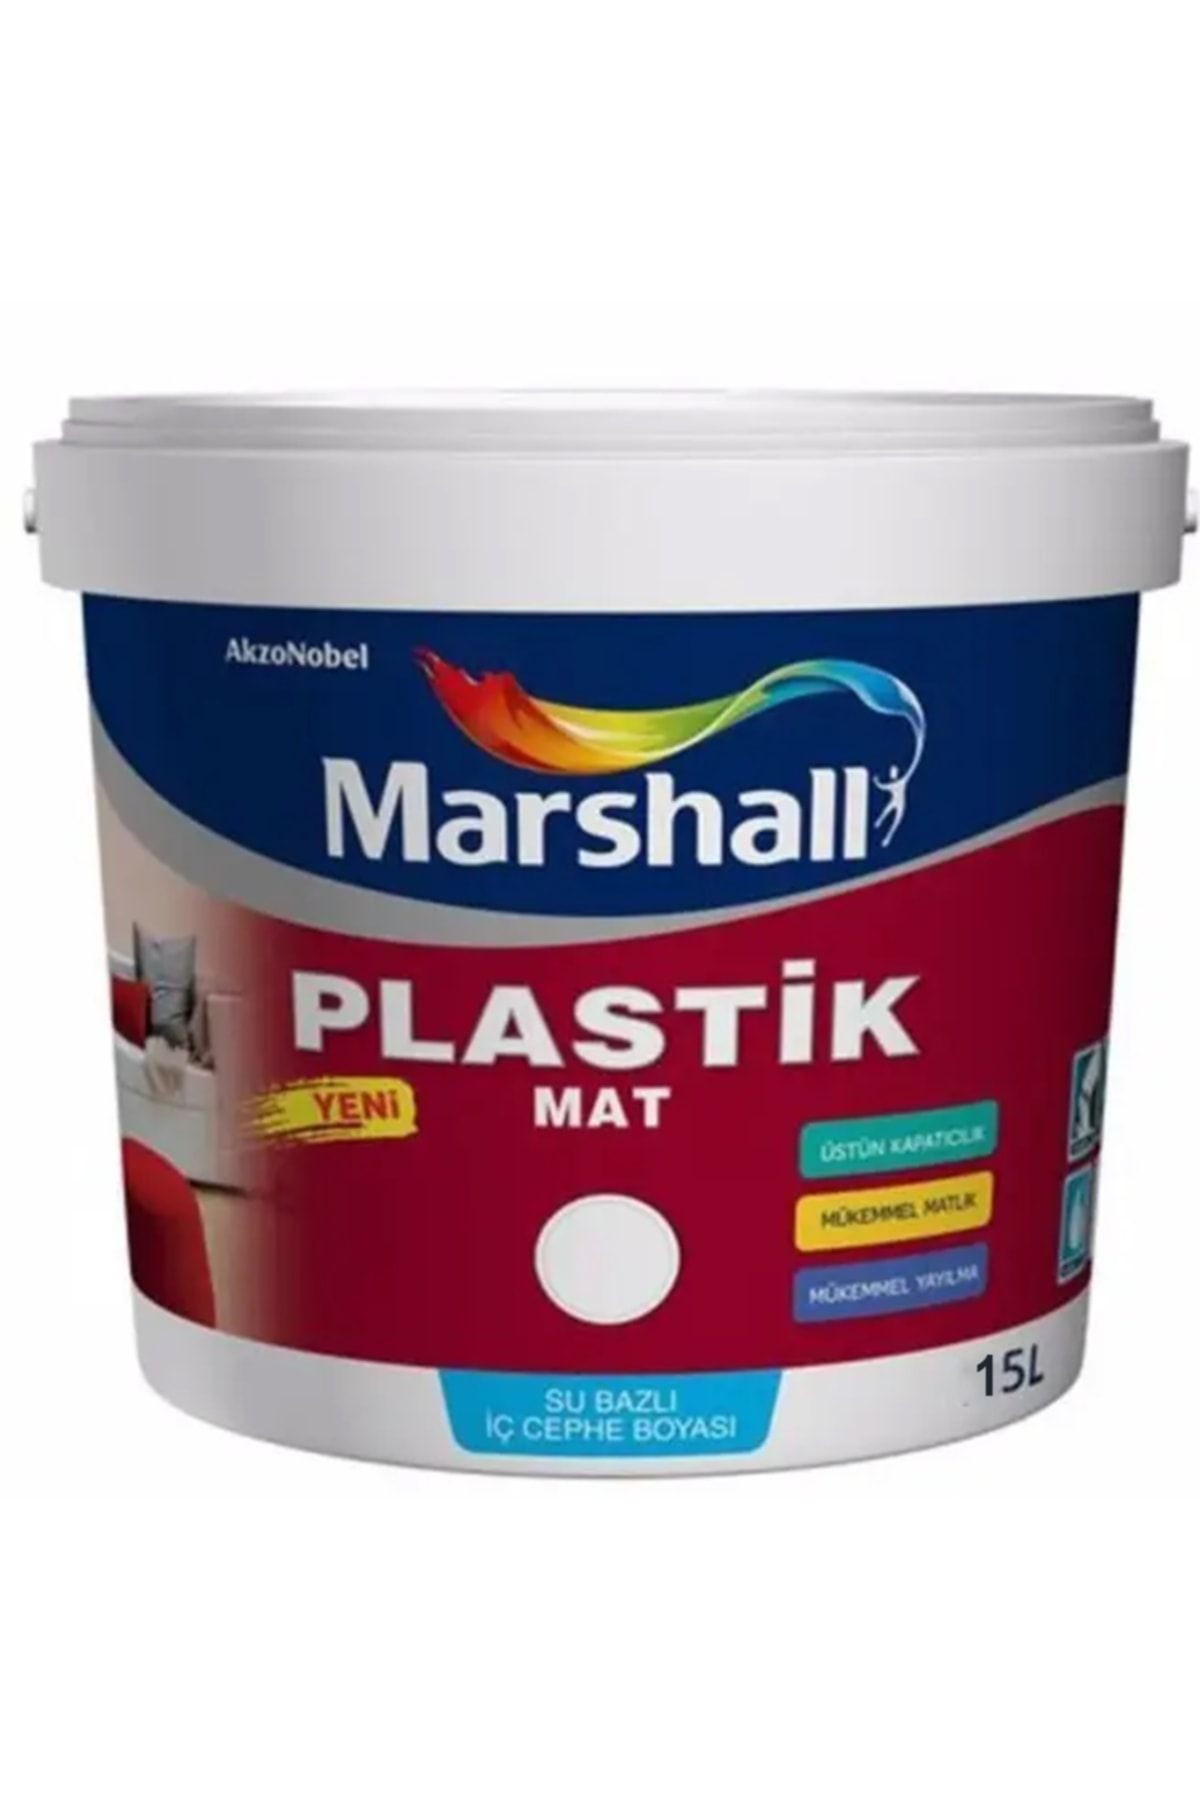 Marshall Plastik Mat Silinebilir Iç Cephe Boyası Zencefil 15 lt